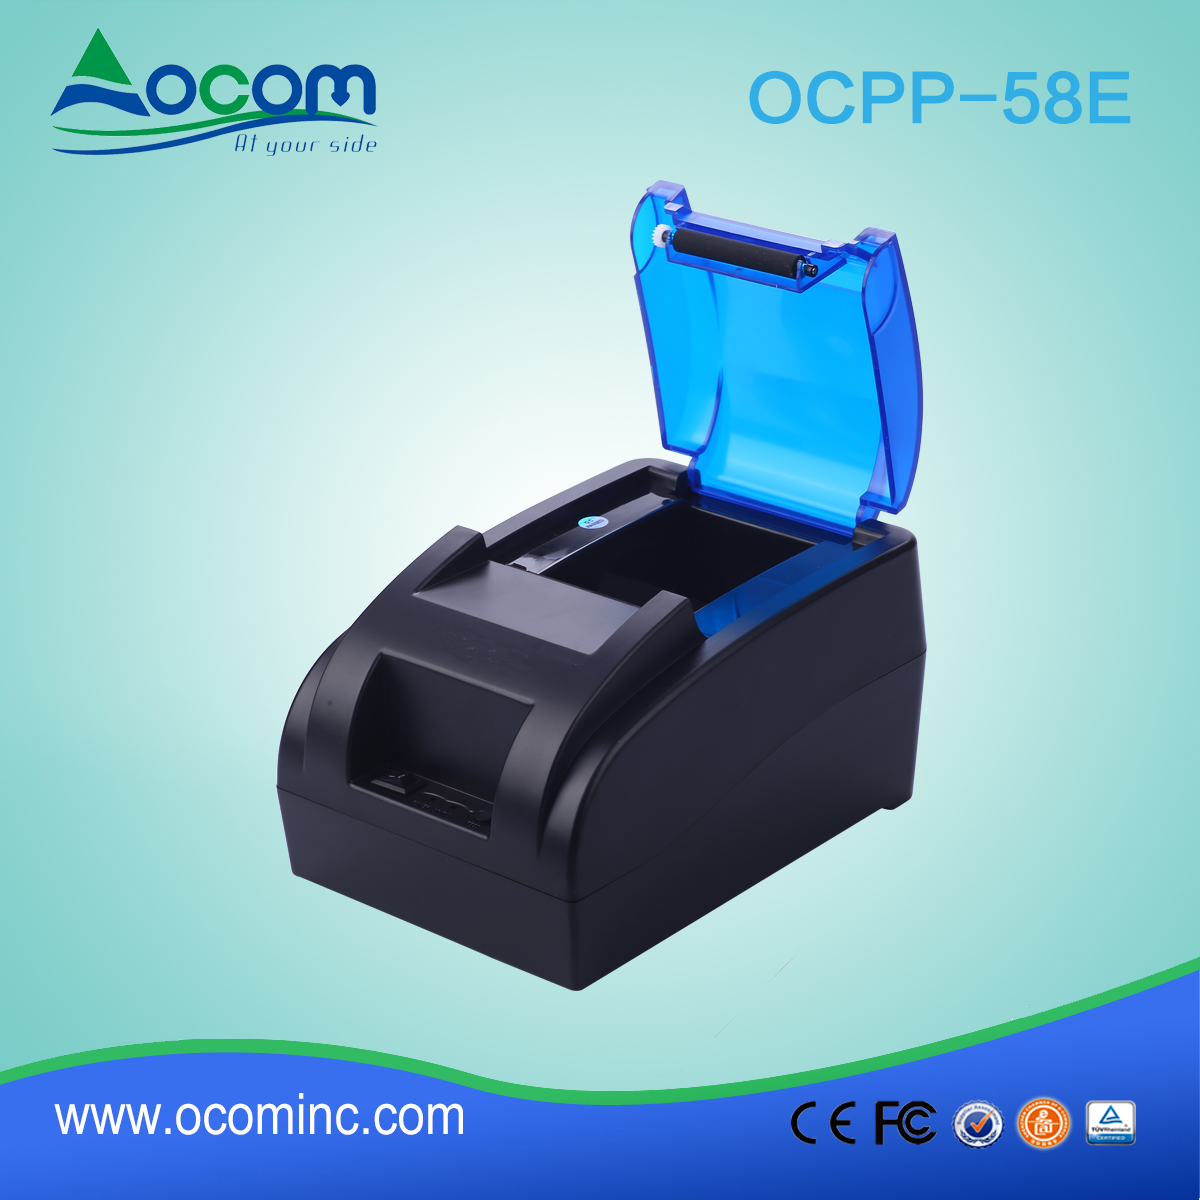 Impressora de recibos térmicos de 58mm com adaptador de alimentação incorporado OCPP-58E-BT